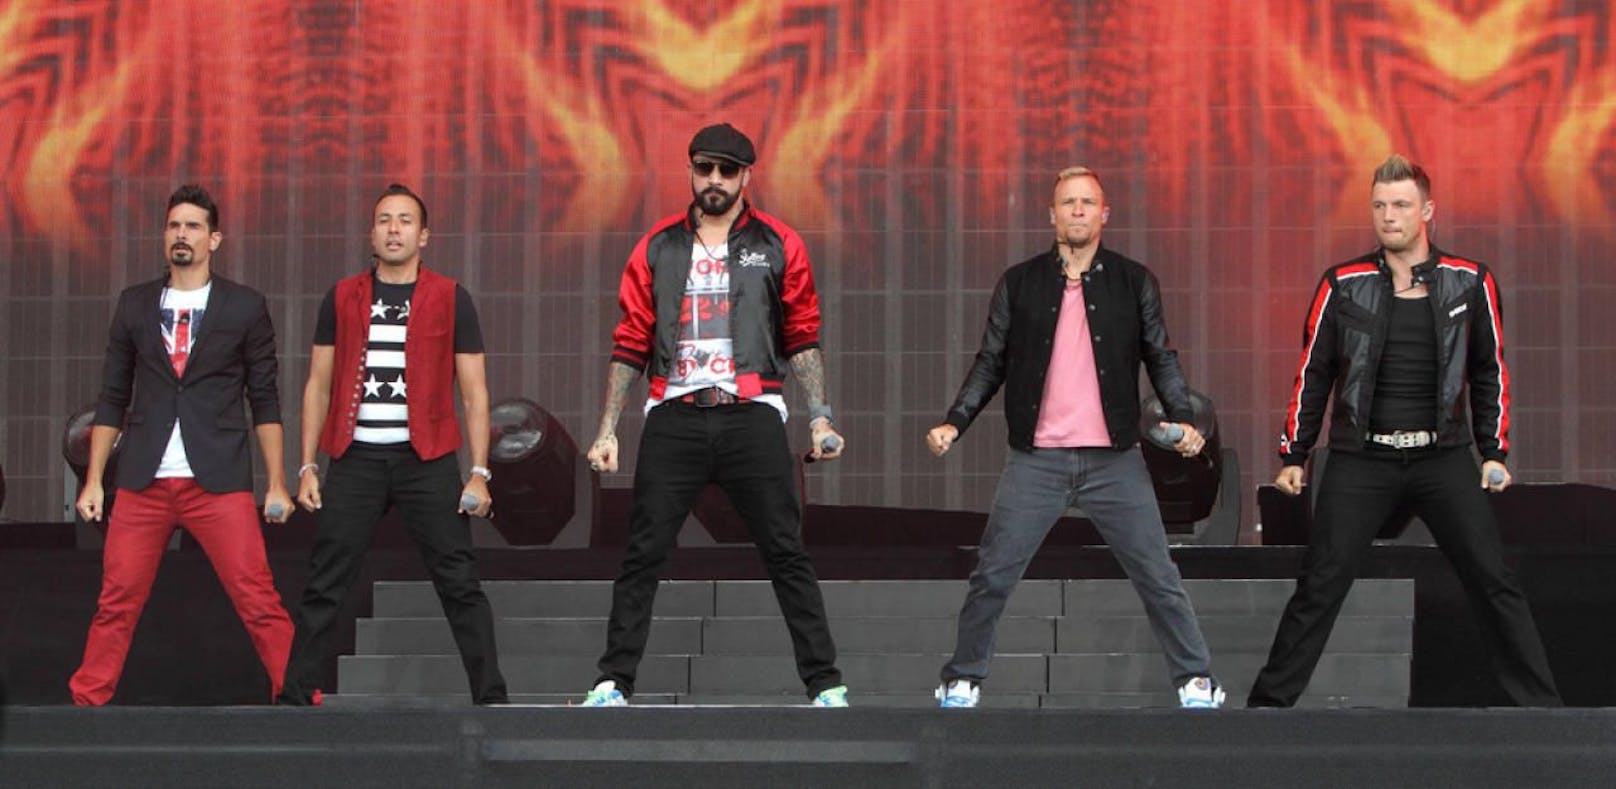 Kreischalarm! Backstreet Boys sind heute in Wien